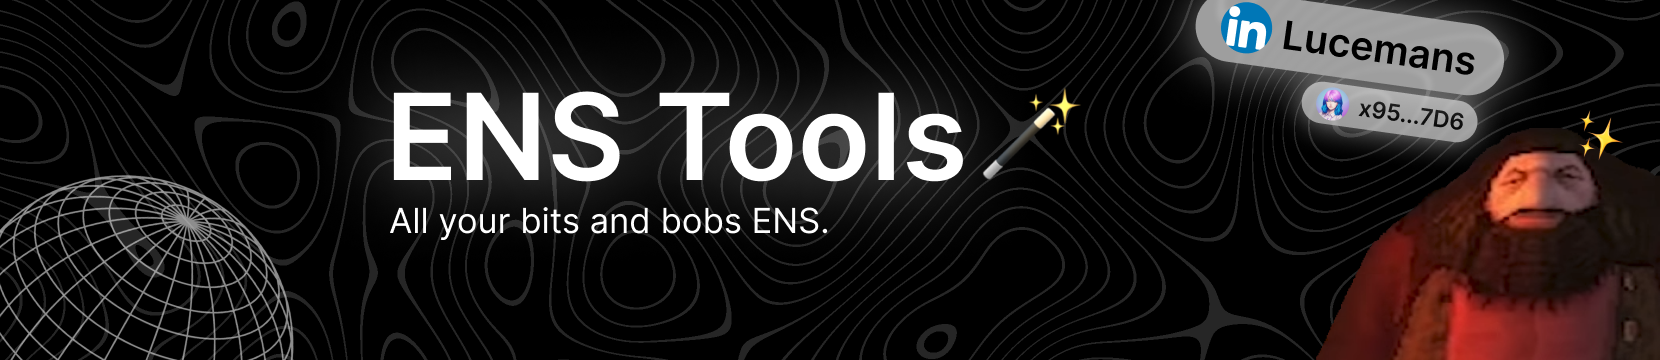 ens-tools